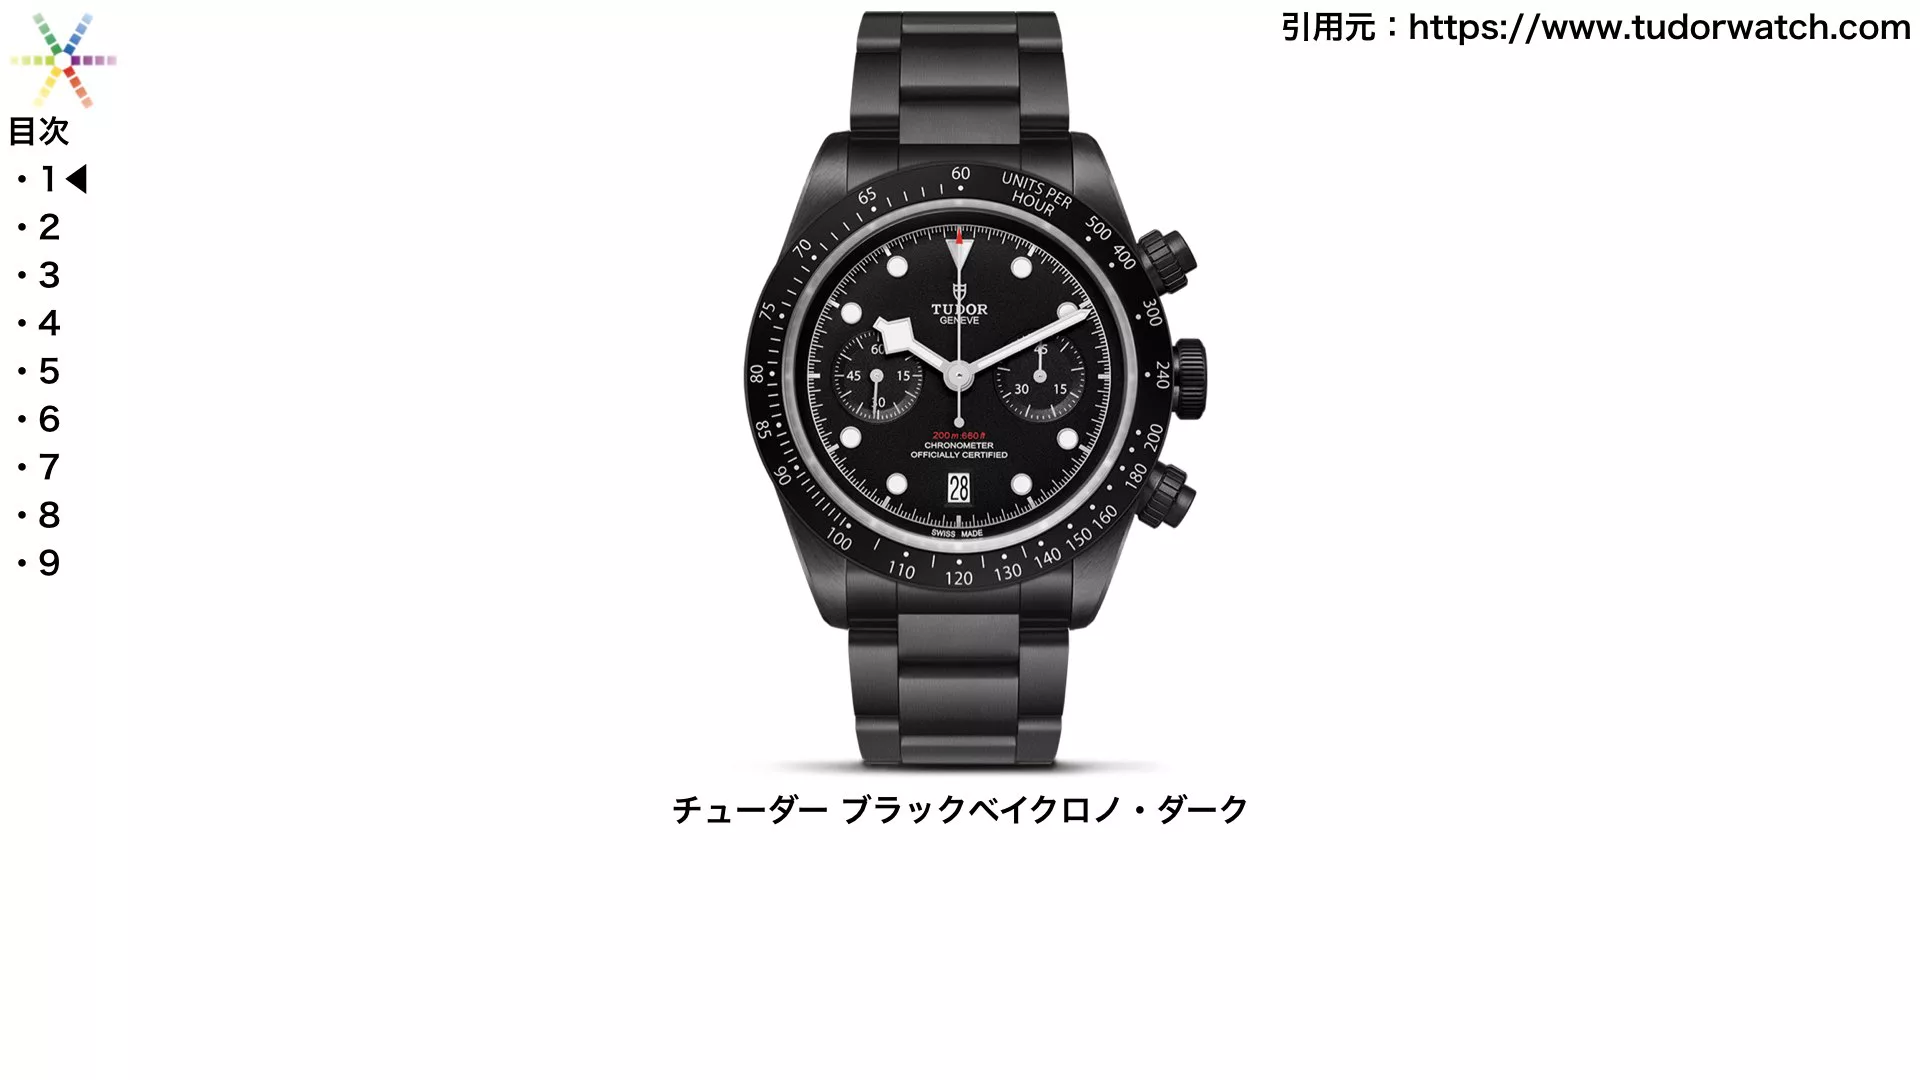 真っ黒な腕時計 オールブラック仕様がカッコいいおすすめモデル9選 ウォッチ買取応援団 有名店のロレックス買取相場を比較 店舗検索